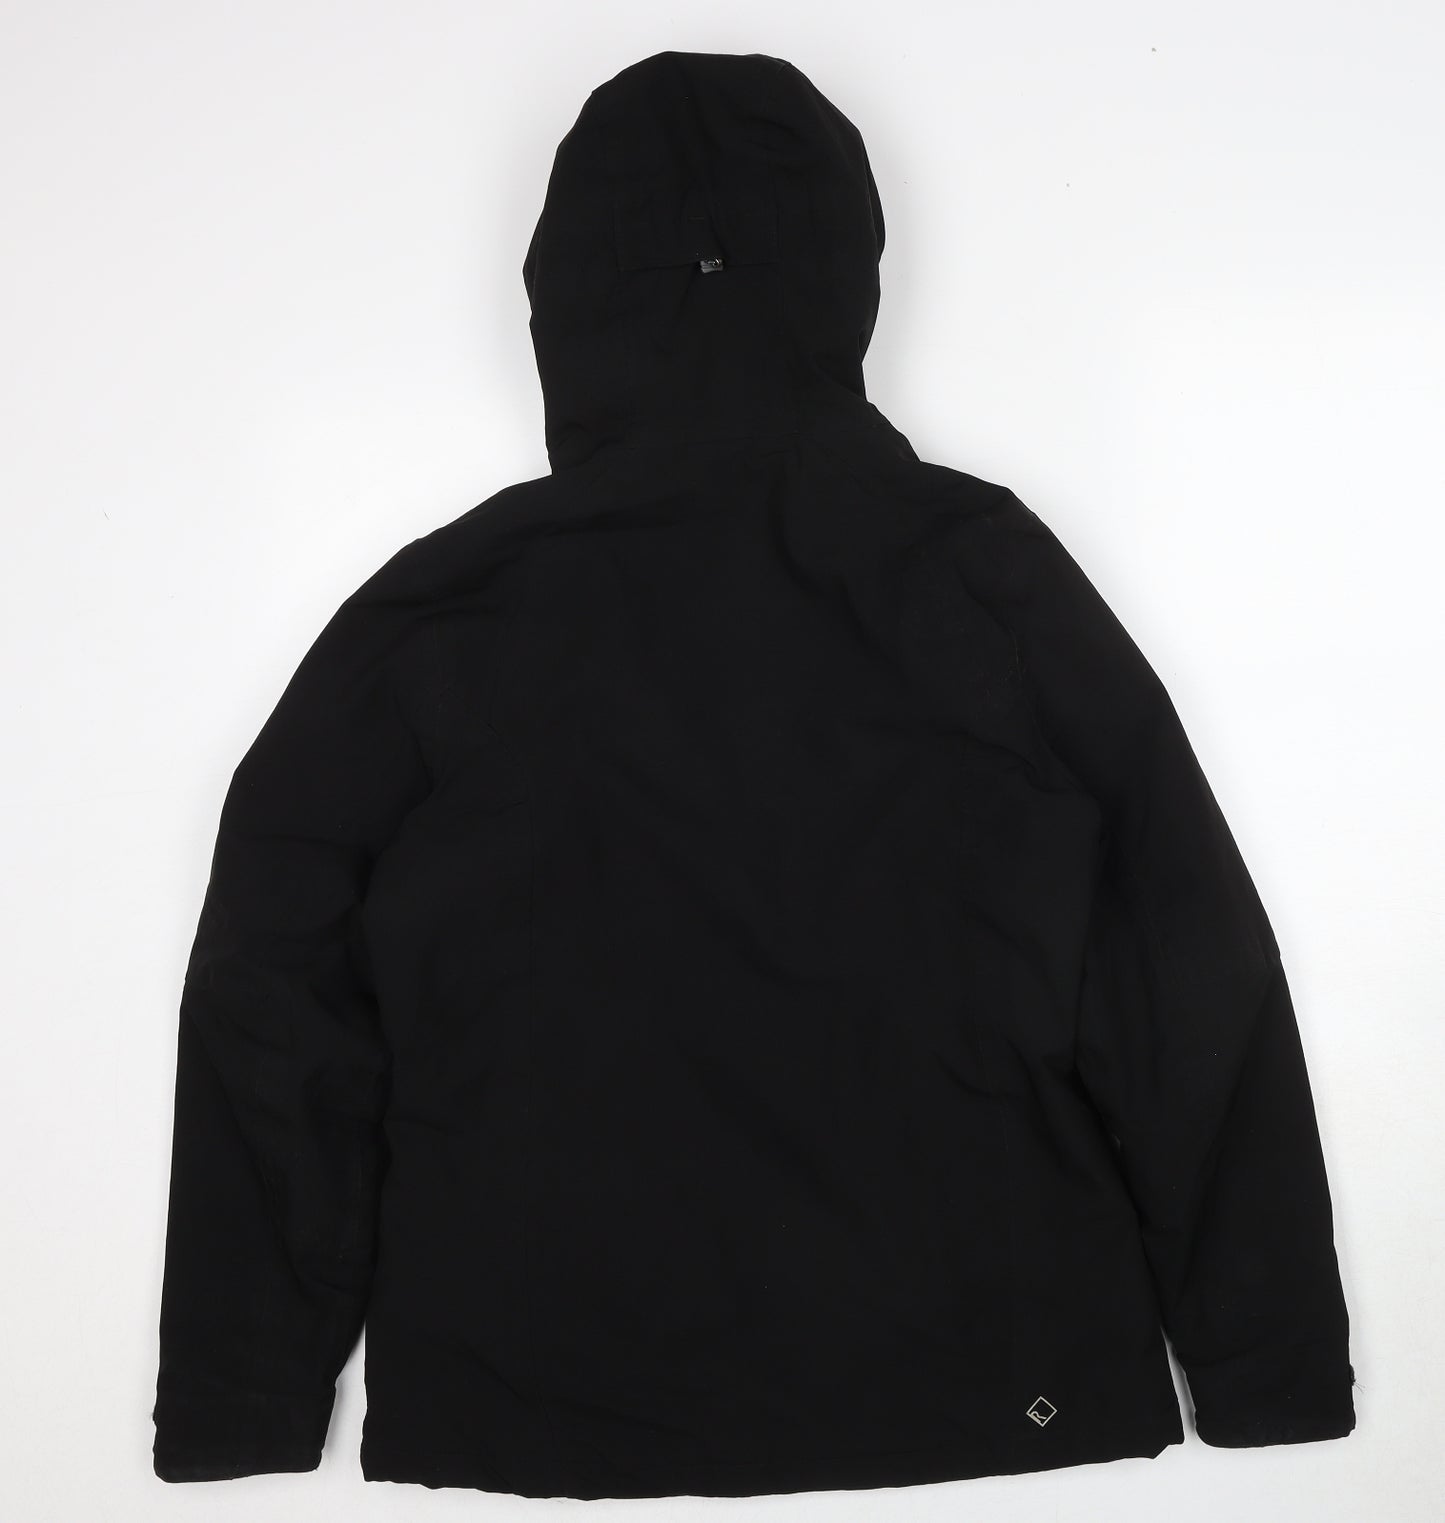 Regatta Womens Black Windbreaker Jacket Size 12 Zip